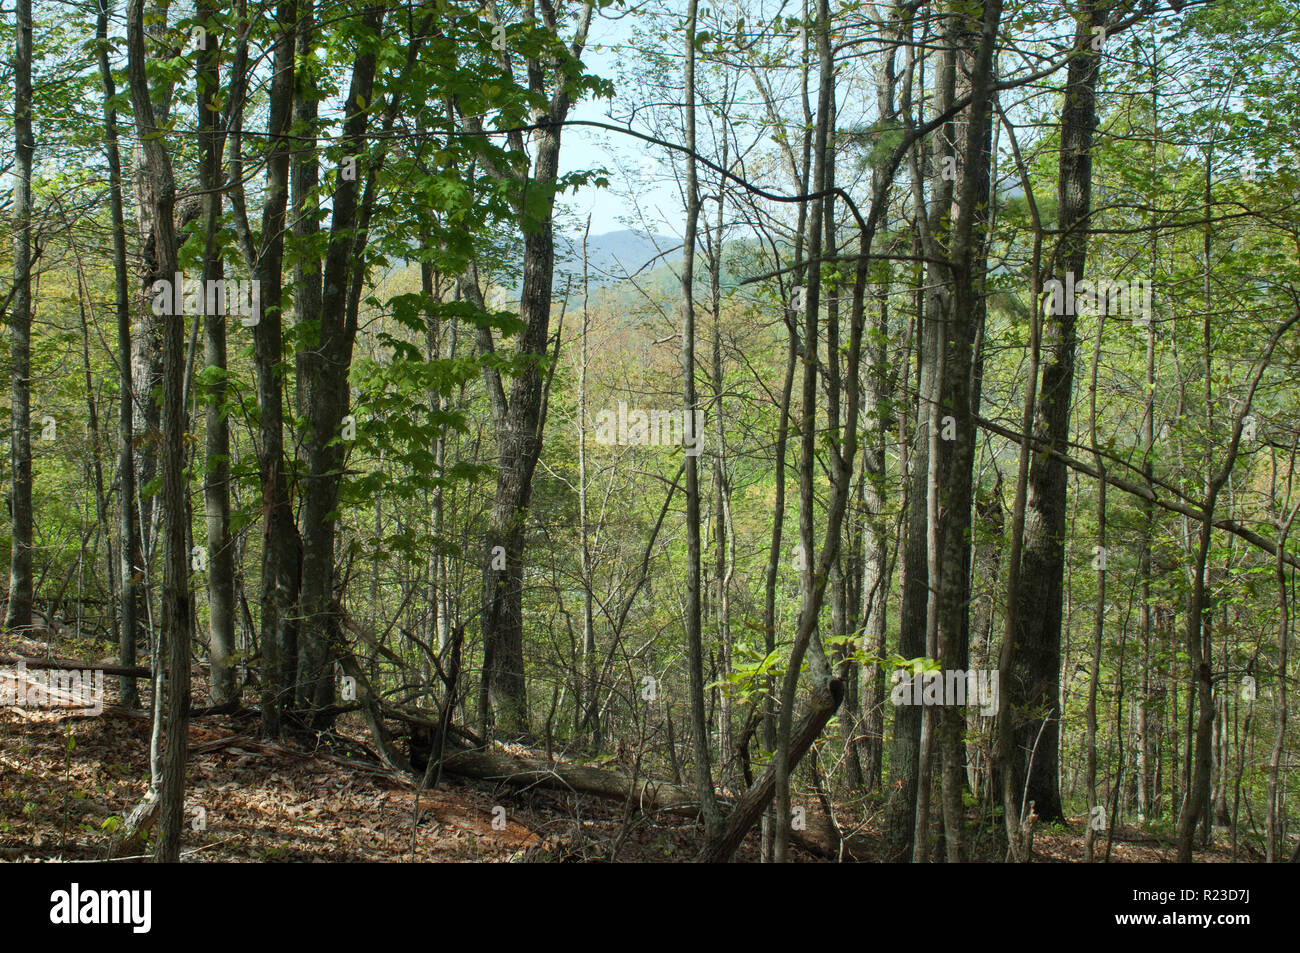 Afficher le long de la Wilderness Road et le chemin du guerrier dans Cumberland Gap. Photographie numérique Banque D'Images